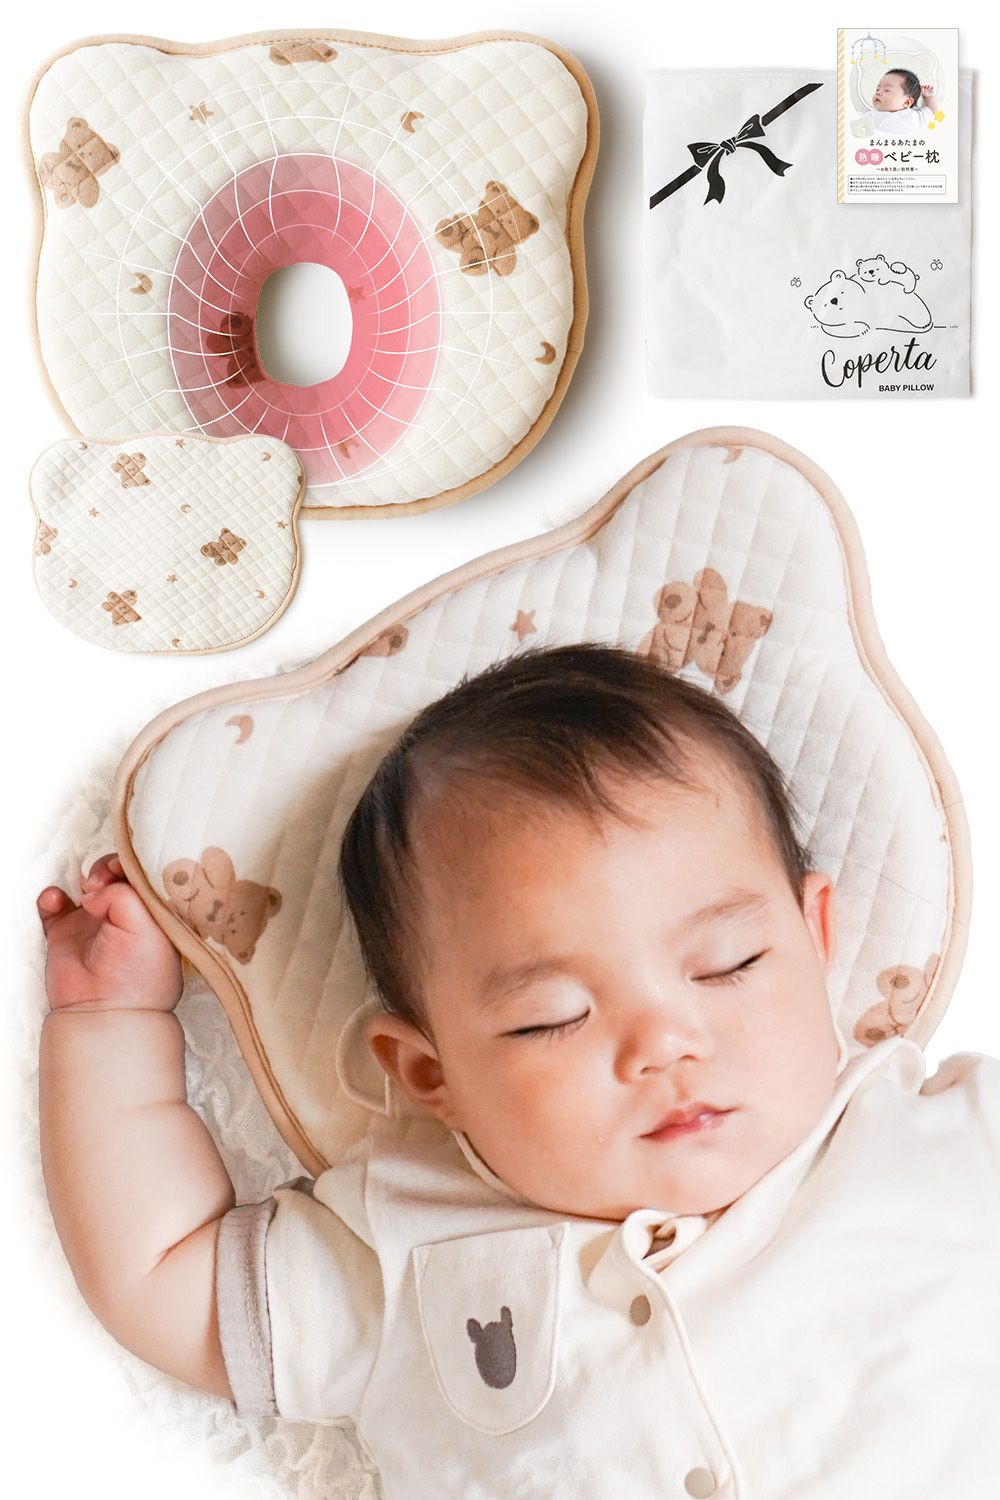 ベビー枕 ベビーまくら 赤ちゃん 枕 新生児 ドーナツ 枕 頭の形 絶壁 向き癖防止 吐き戻し防止 絶壁防止 絶壁矯正 頭の形を良くする 赤ちゃん用品  クッション